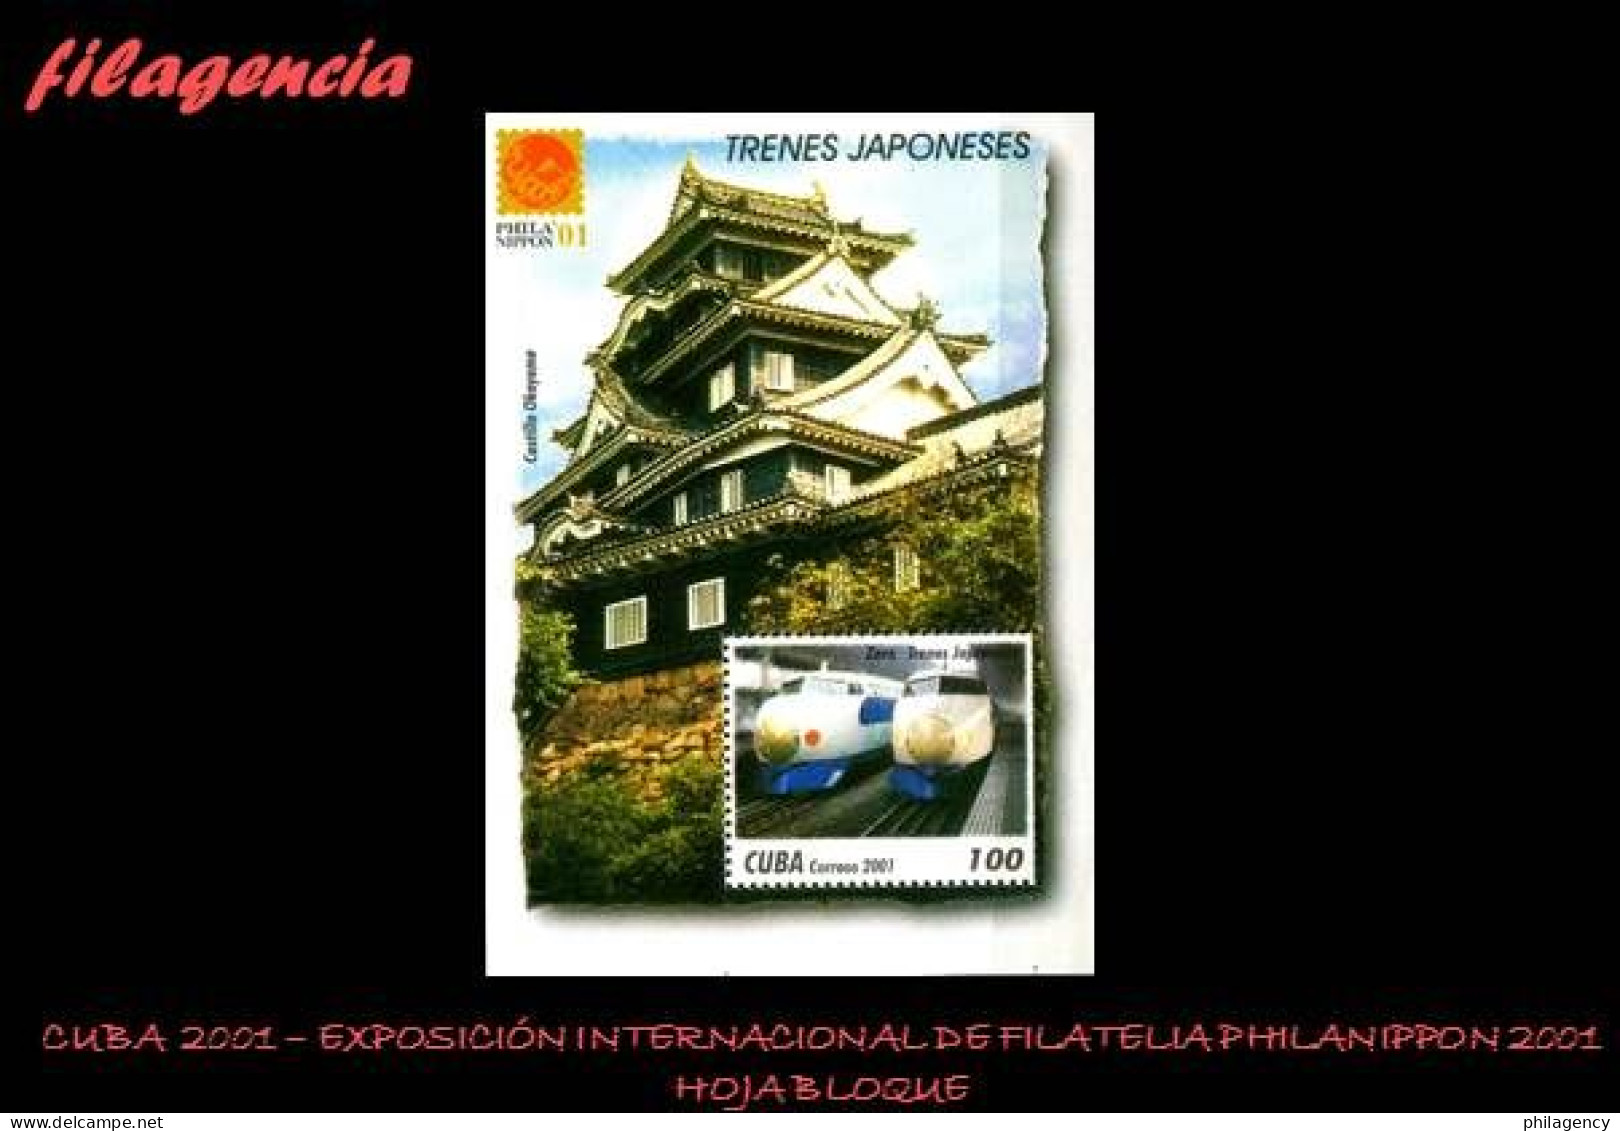 CUBA MINT. 2001-13 EXPOSICIÓN FILATÉLICA PHILANIPPON 2001. TRENES RÁPIDOS JAPONESES. HOJA BLOQUE - Ongebruikt